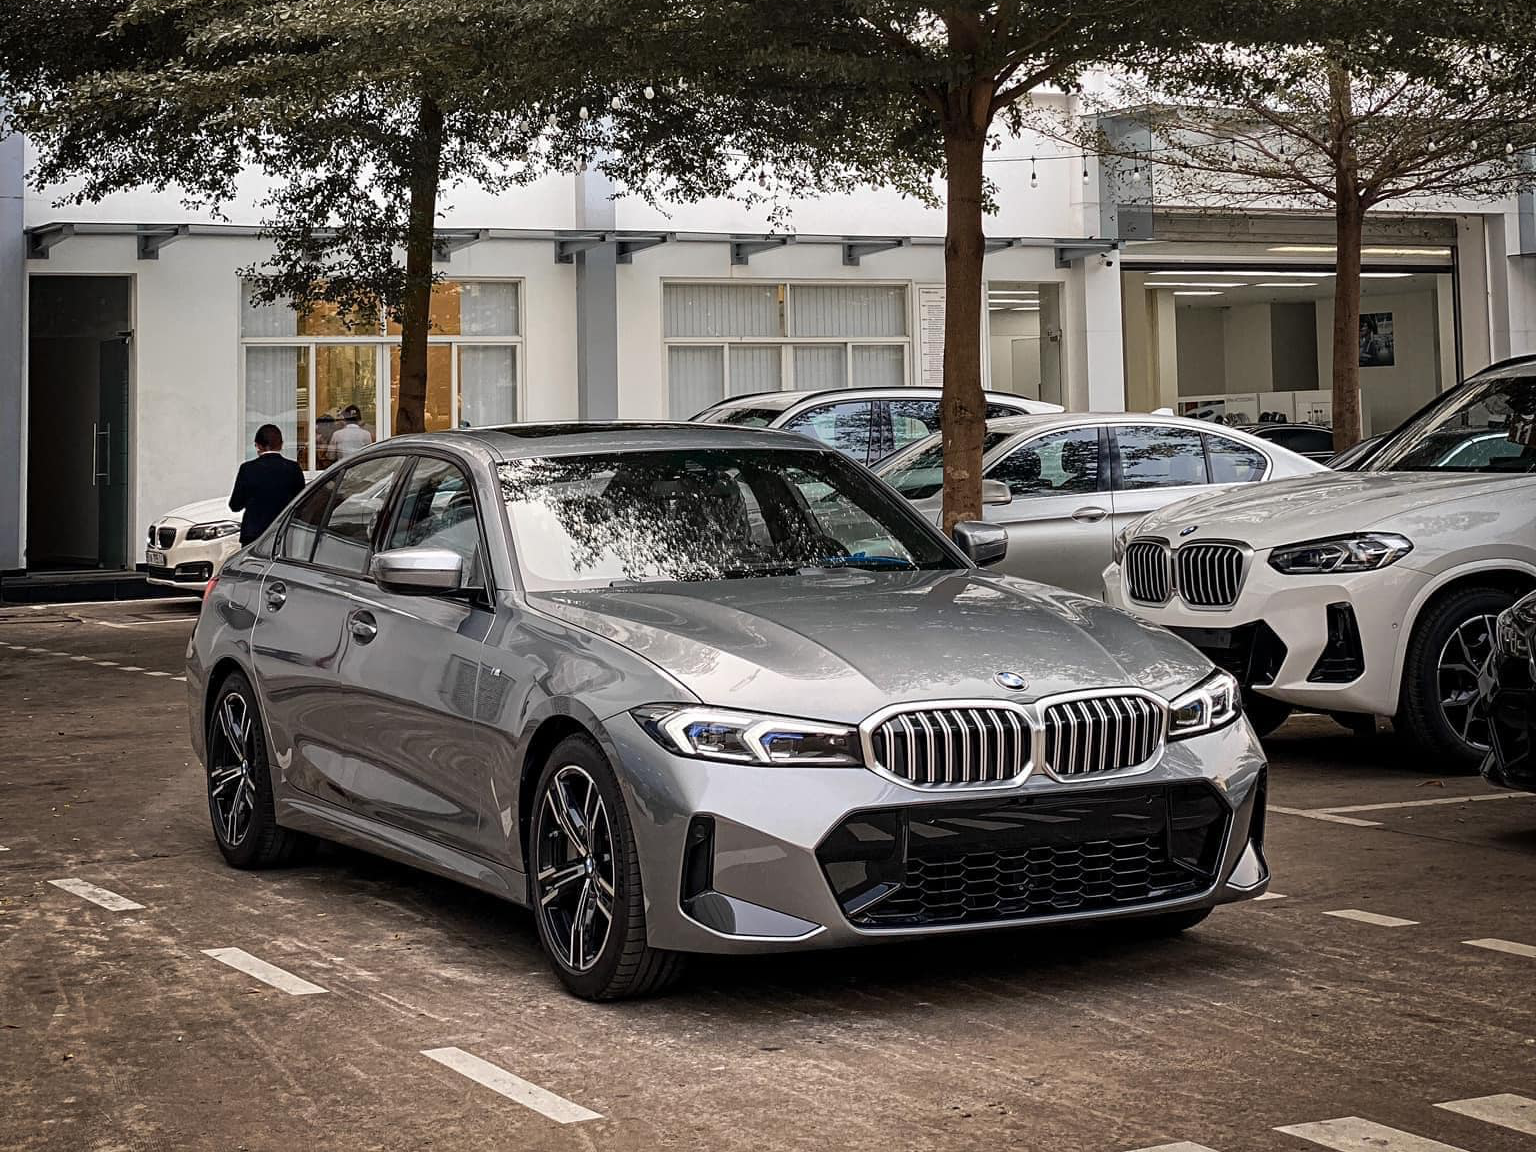 BMW 3-Series bản đắt nhất giá gần 1,9 tỷ đồng vừa về đại lý cho thấy nhiều điểm mới: Cắt phanh M, lần đầu có cửa nóc nhưng chưa bằng ‘Mẹc’ C - Ảnh 2.